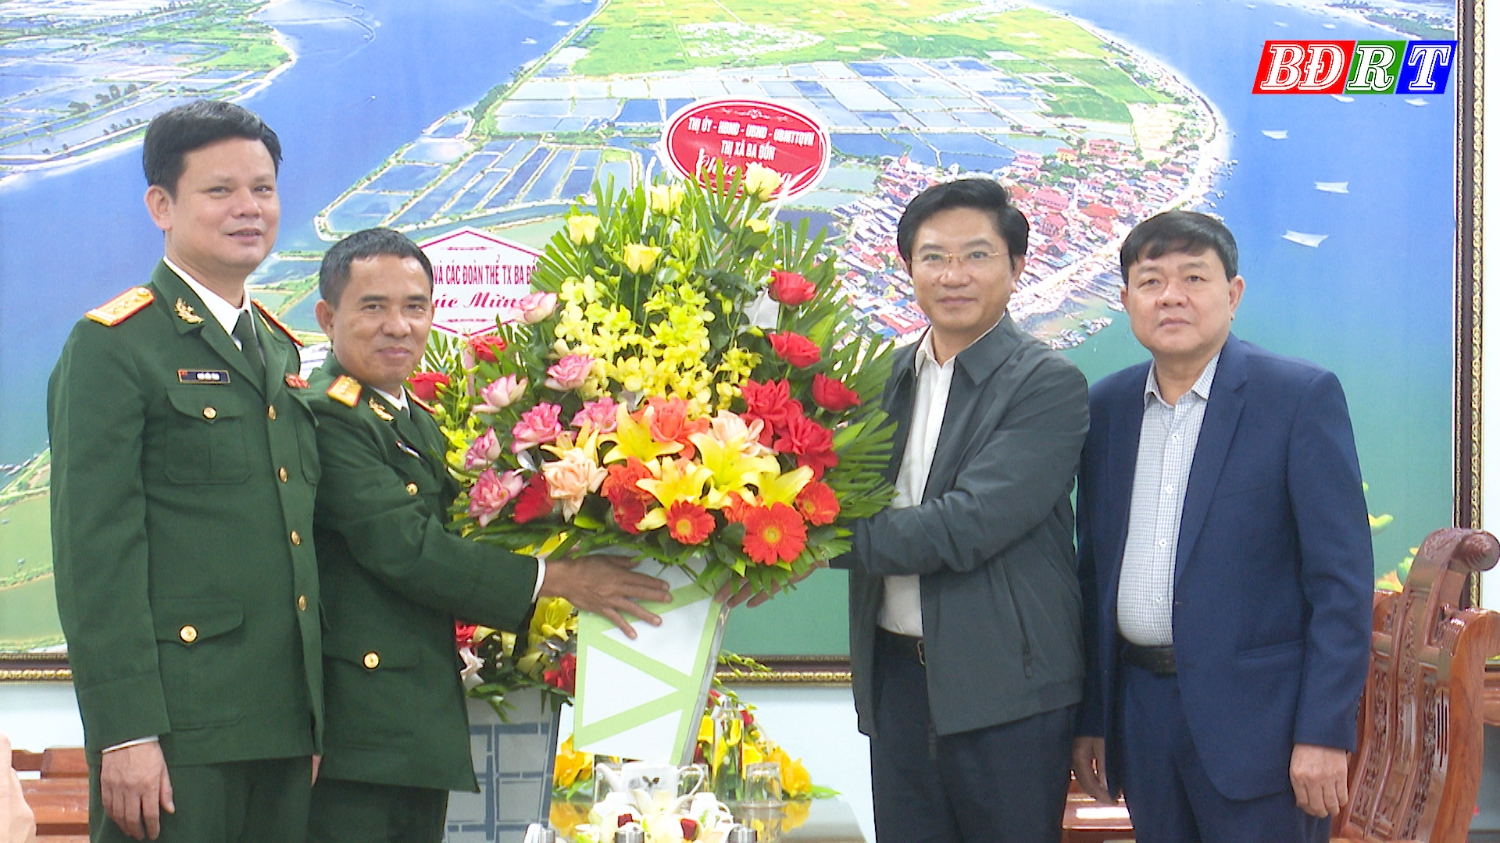 Đồng chí Bí thư Thị ủy và đồng chí Chủ tịch UBND thị xã tặng hoa chức mừng cán bộ, chiến sỹ  Ban CHQS thị xã.